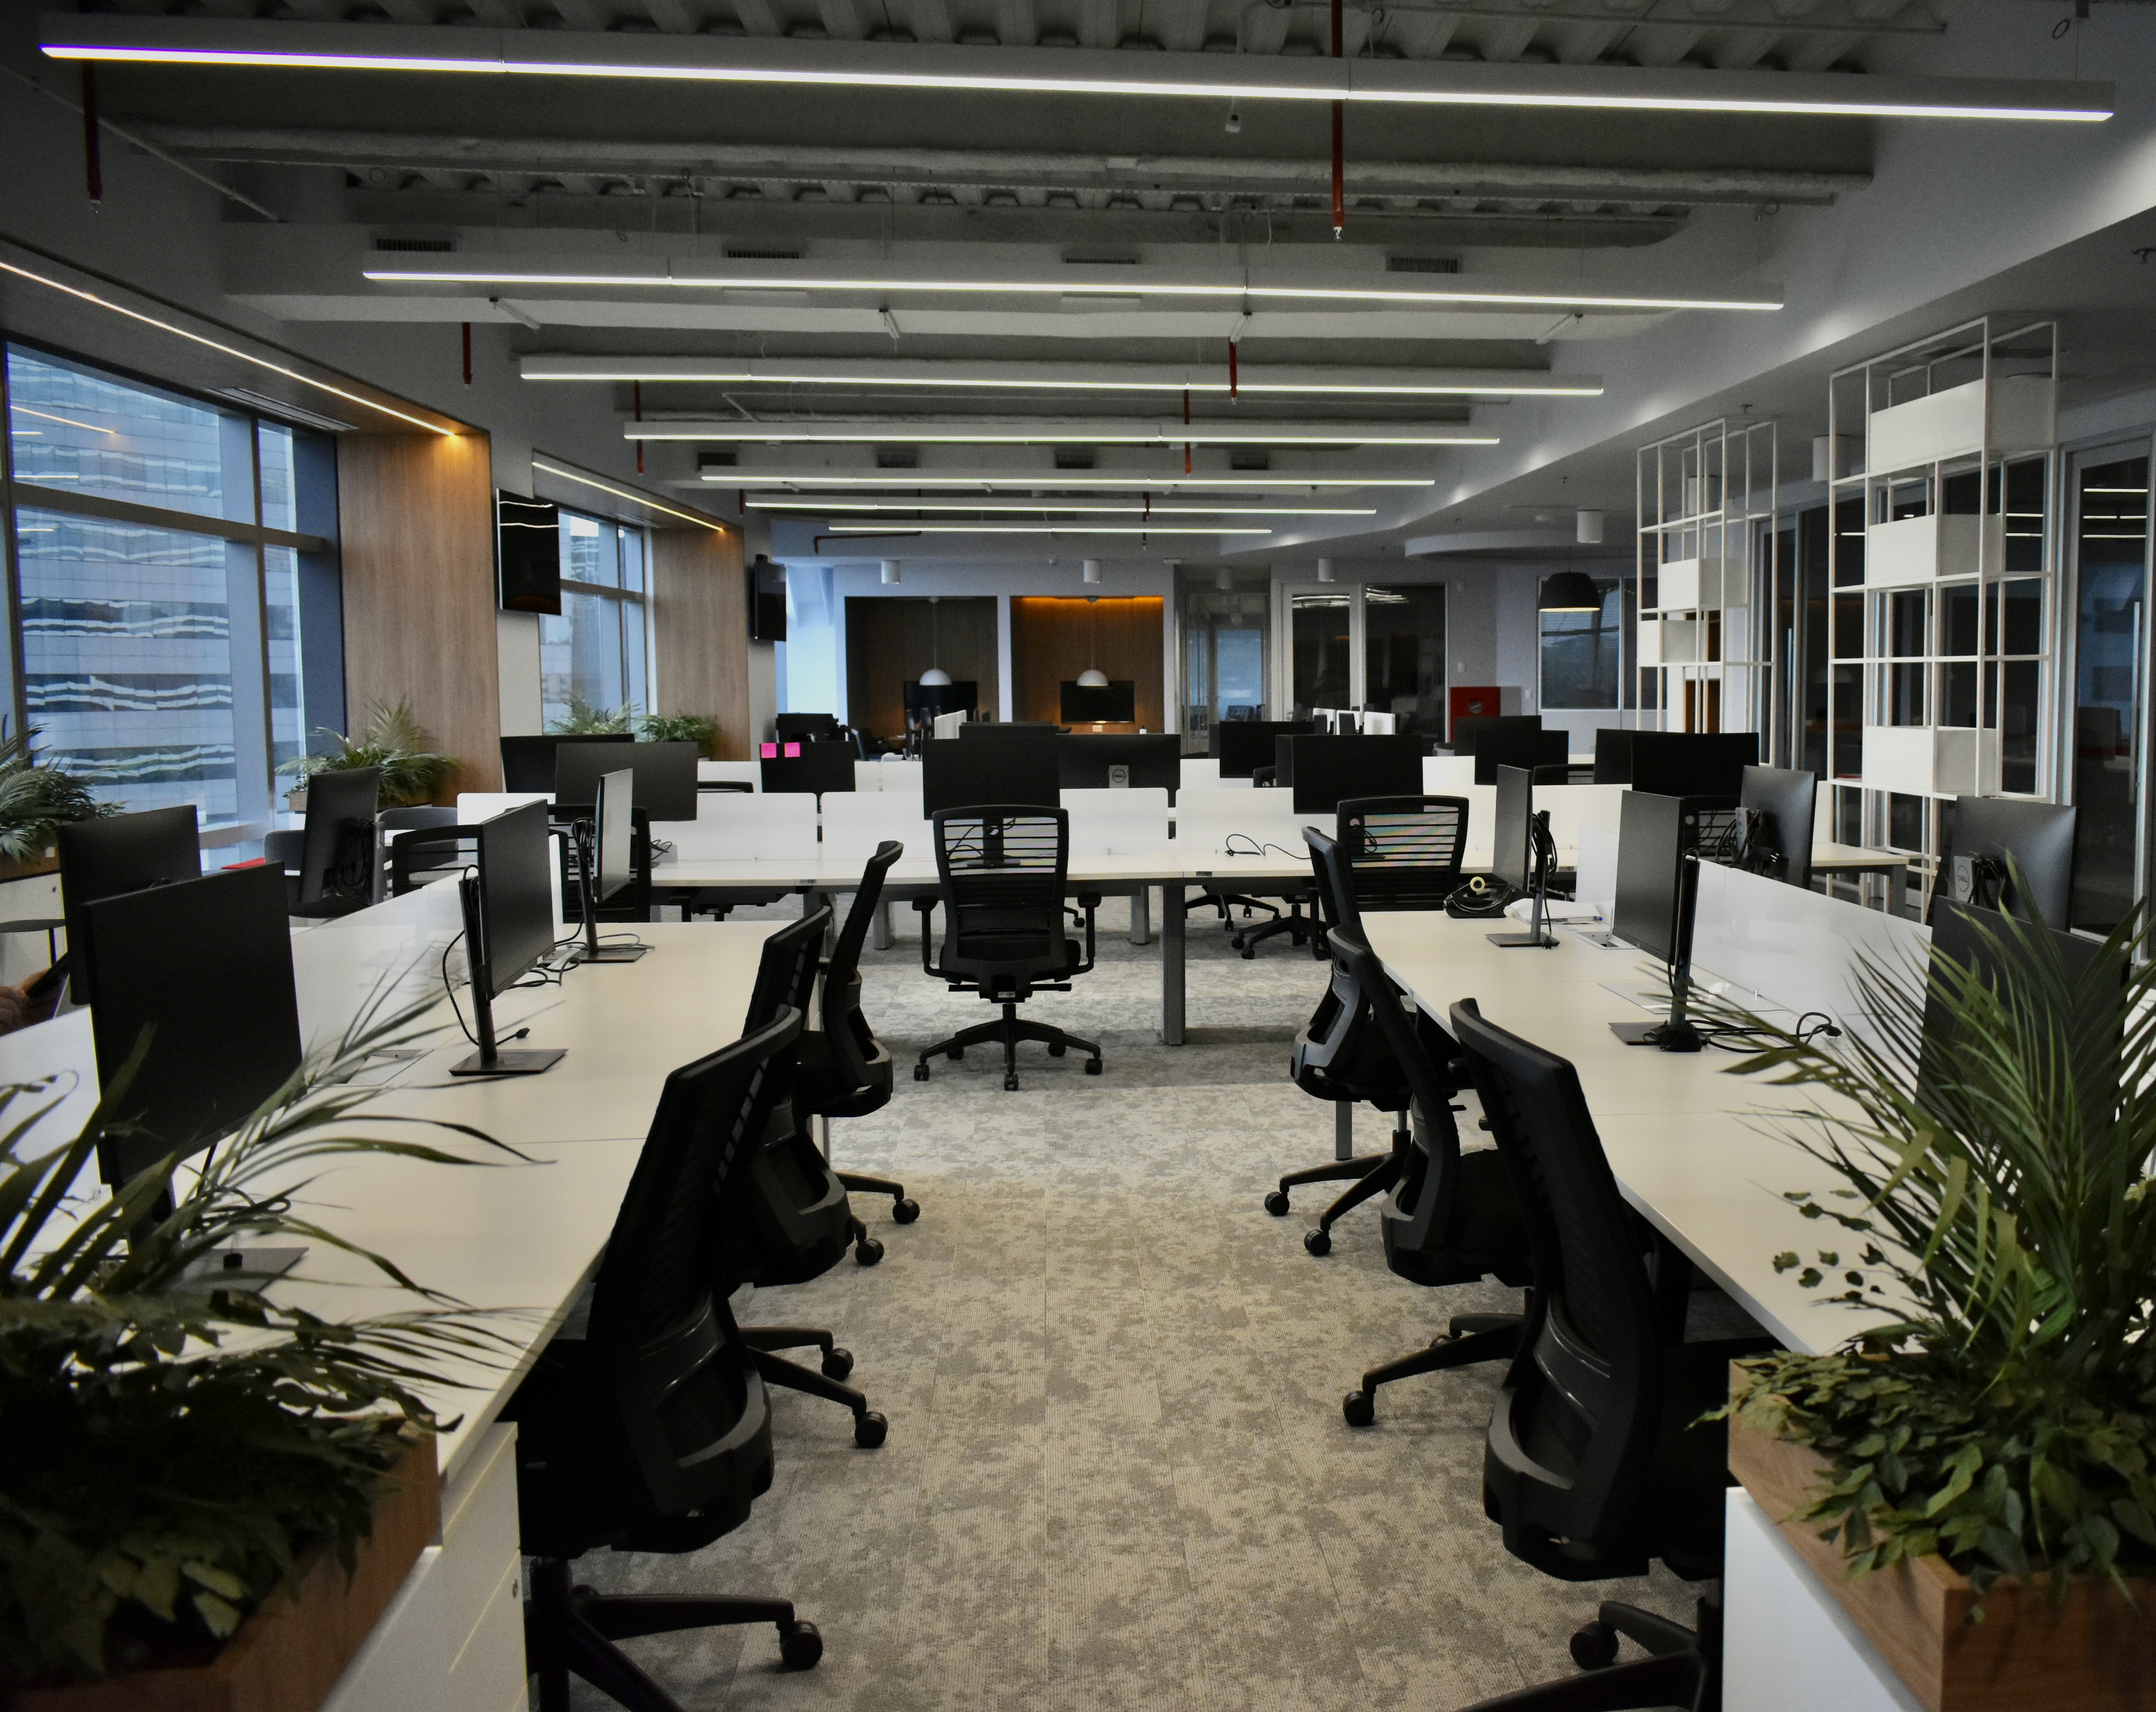 Foto mostra um dos espaços do novo escritório da Audi. Esse espaço, que tem carpete de pano claro, várias mesas de escritório estão dispostas, mas nenhuma delas é fixa